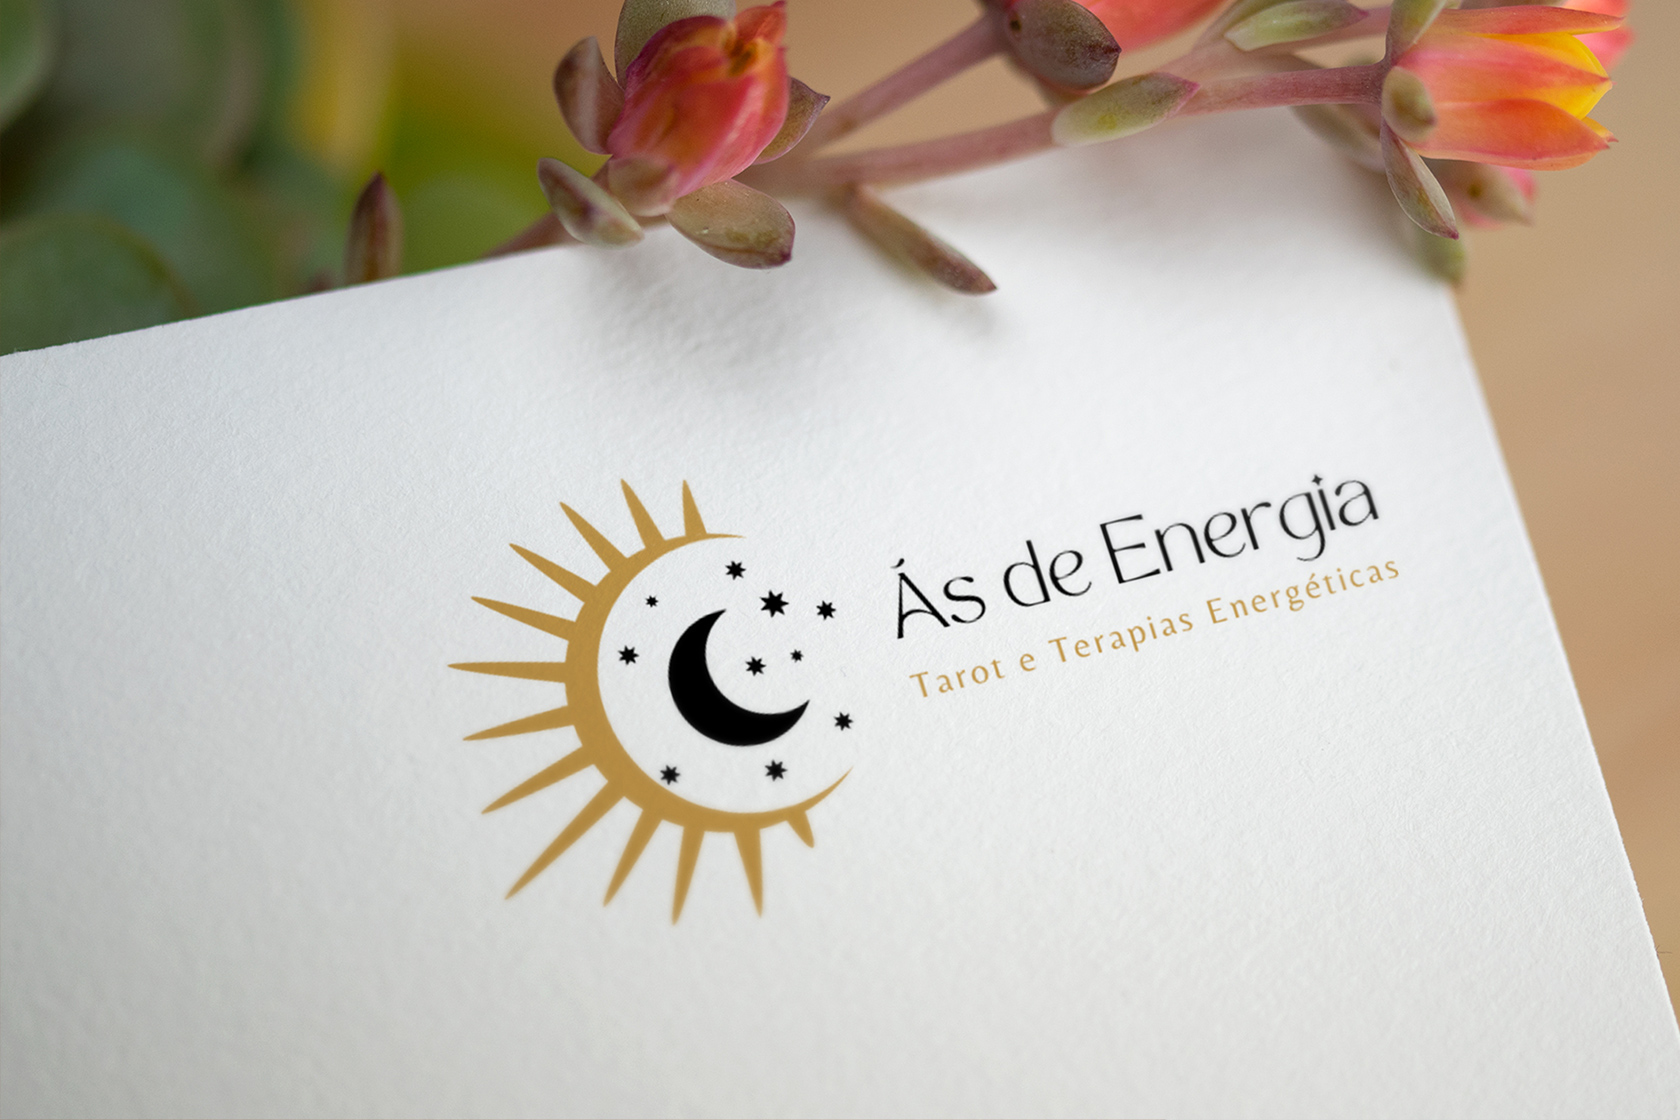 Cartão-de-visita do projeto Ás de Energia.